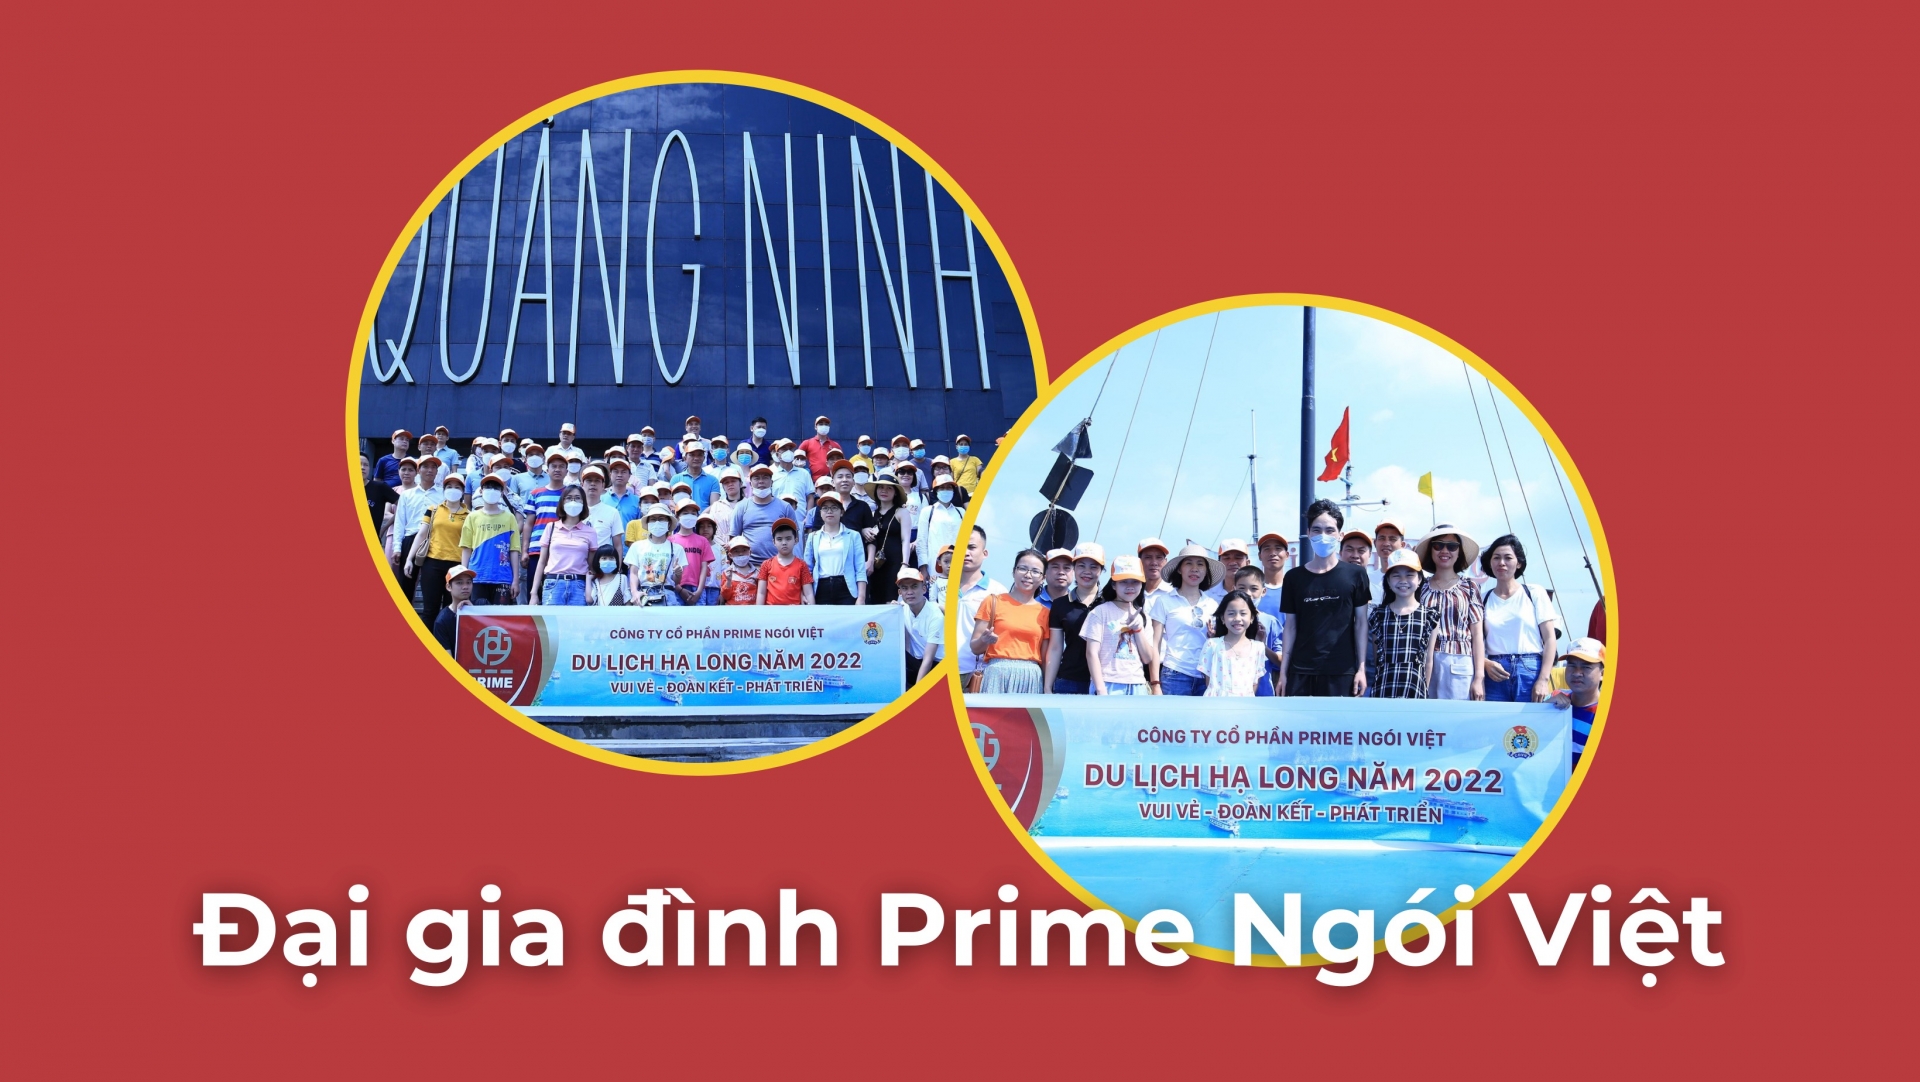 Công đoàn Prime Ngói Việt: chăm lo NLĐ, trách nhiệm với cộng đồng